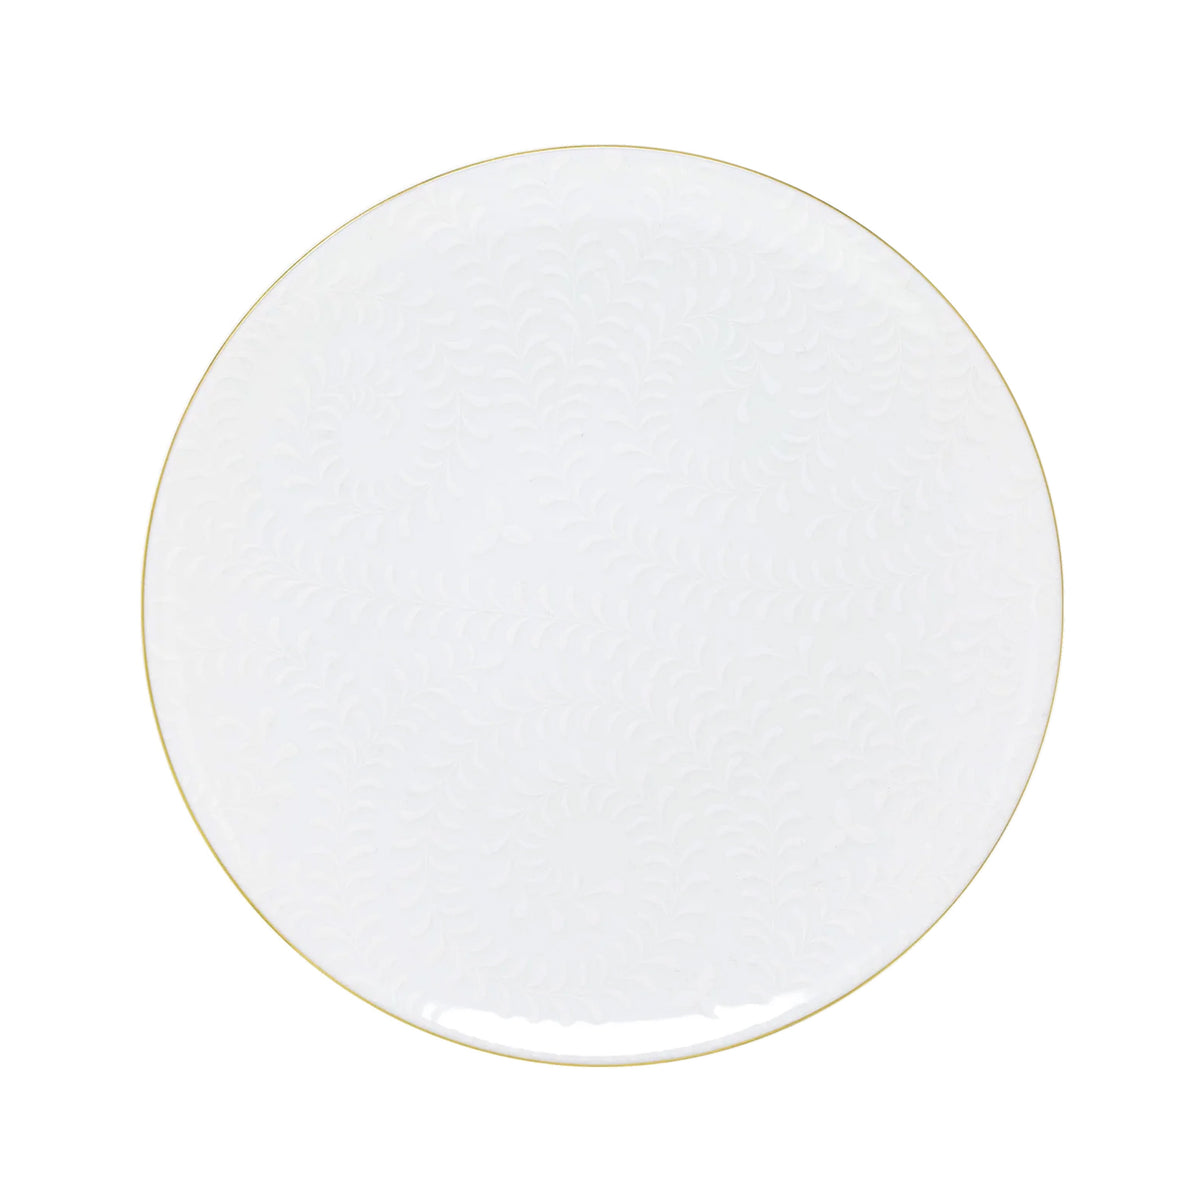 ARJUNA blanc sur blanc filet Or - Assiette plate